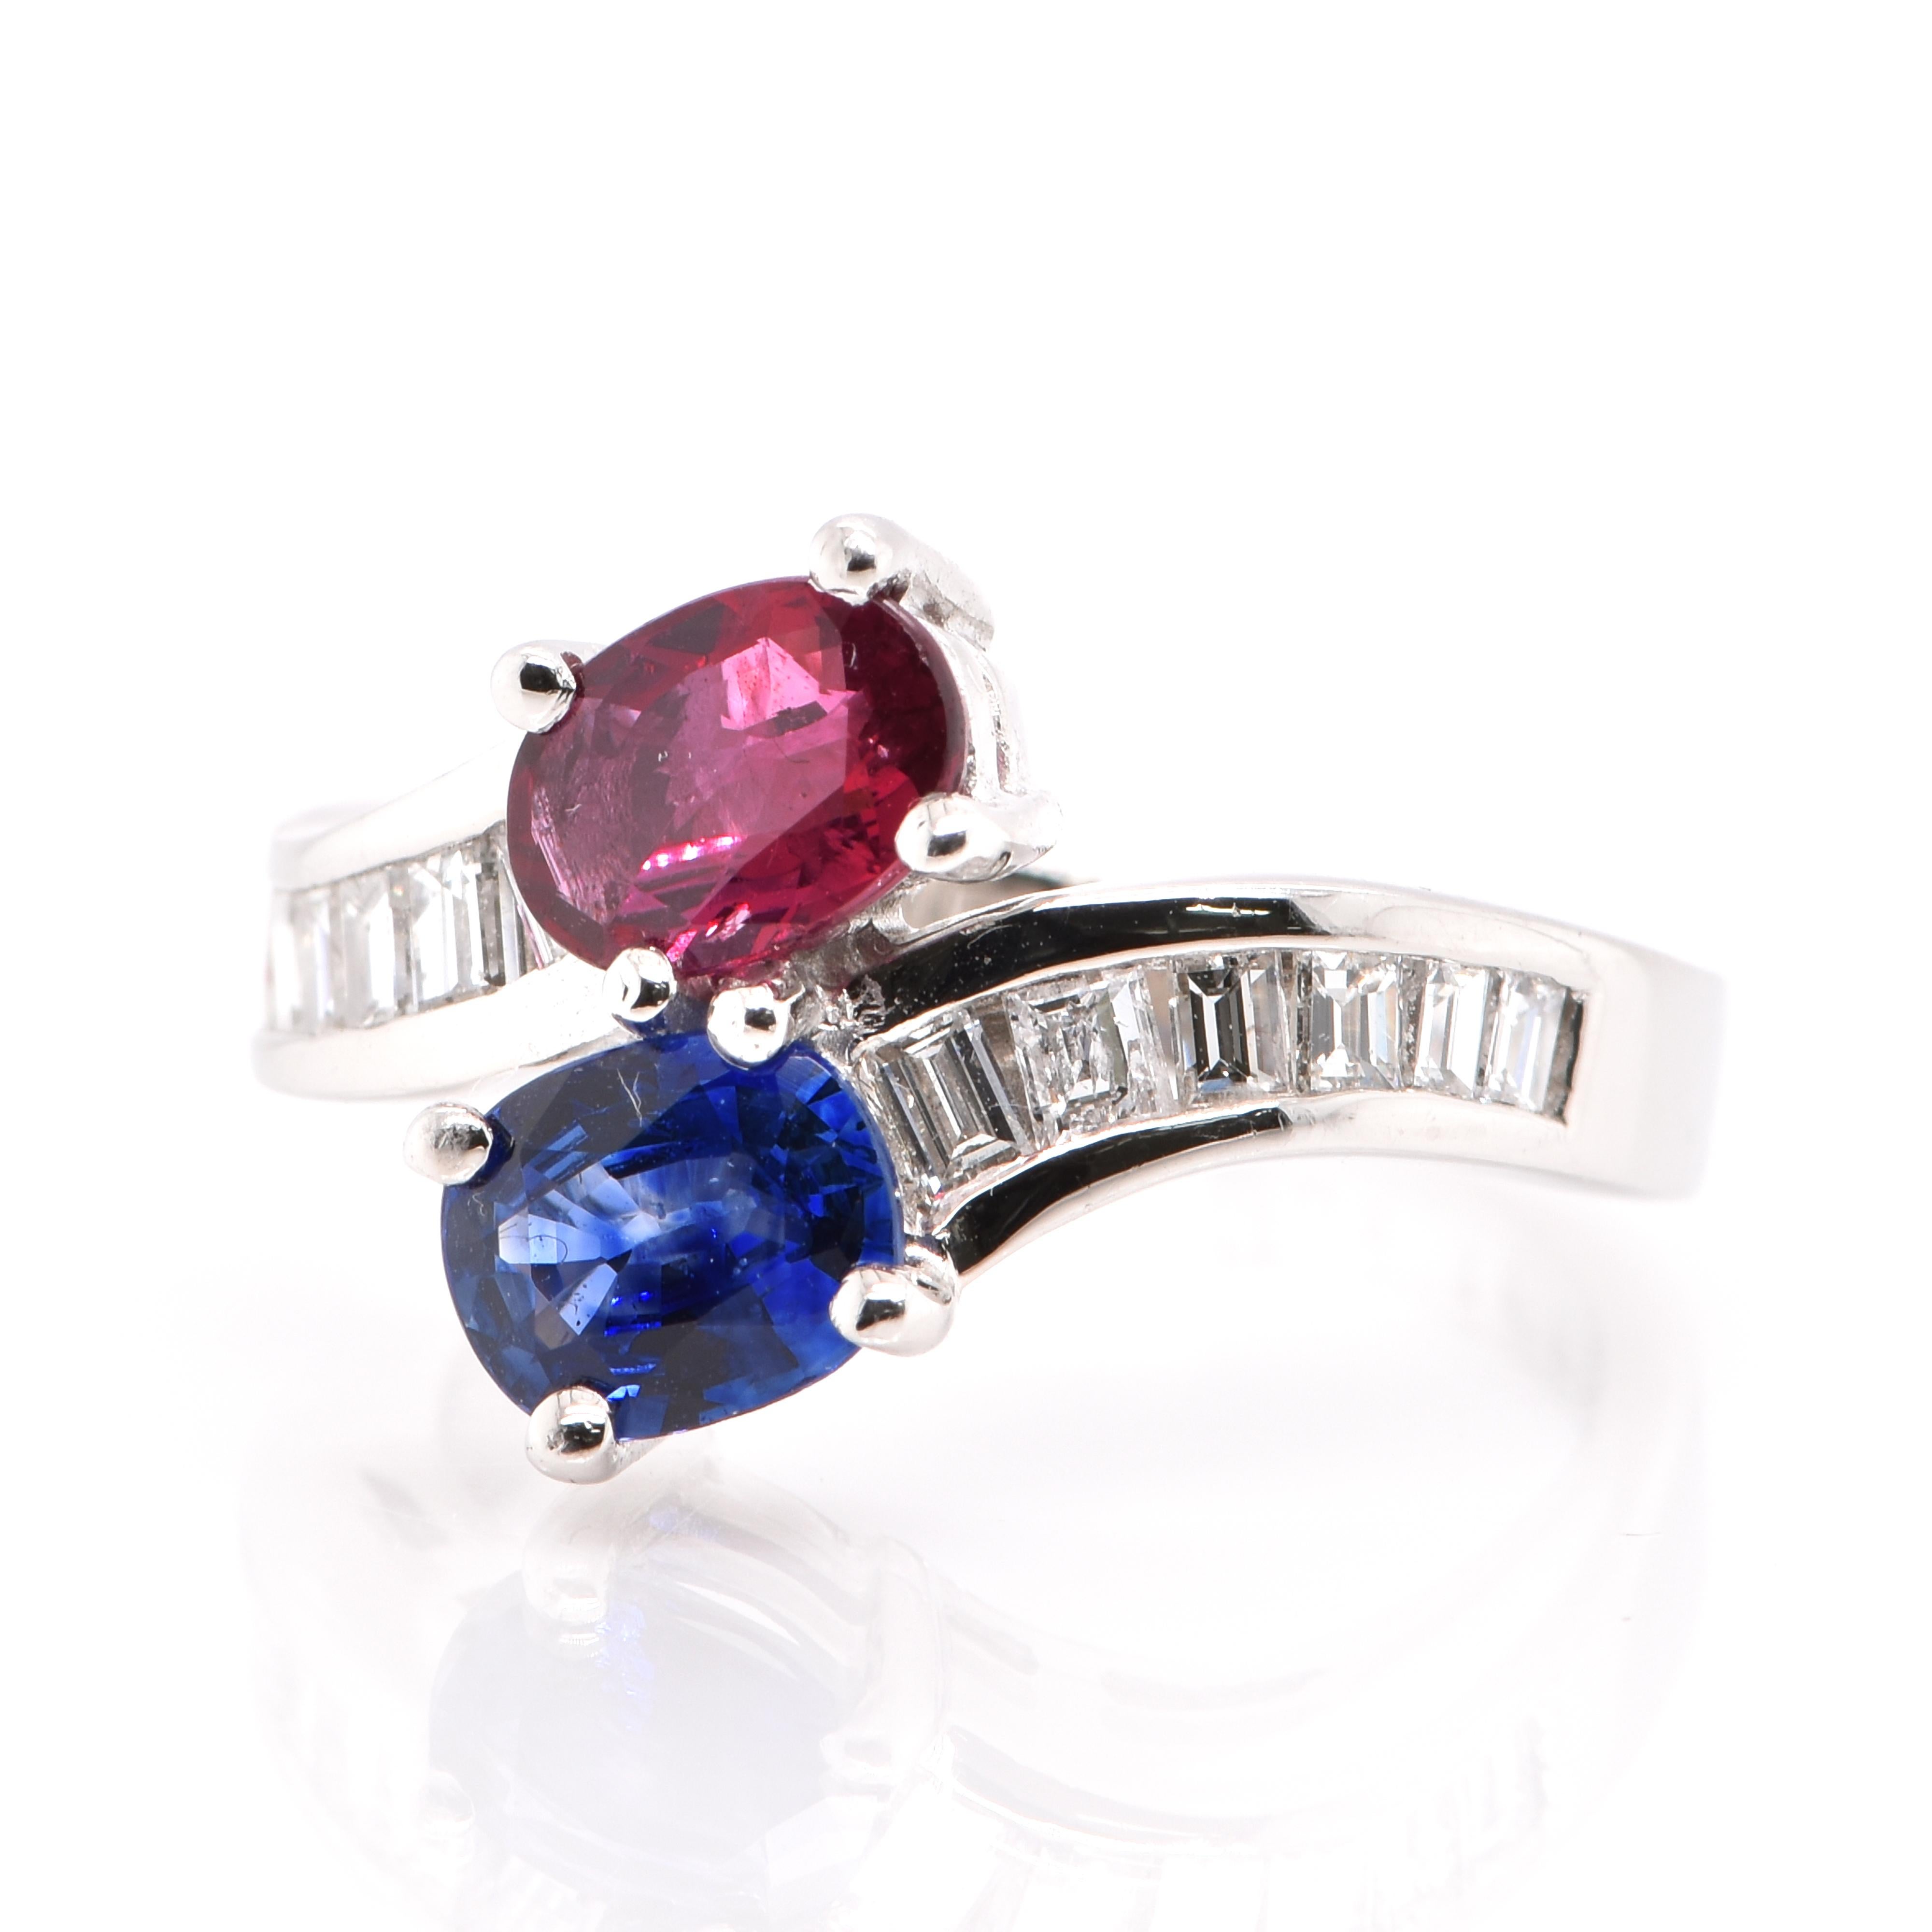 Ein wunderschöner Duo-Ring mit einem natürlichen Rubin von 0,93 Karat, einem natürlichen blauen Saphir von 0,91 Karat und Diamanten von 0,61 Karat, eingefasst in Platin. Saphire und Rubine gehören beide zur Korund-Familie der Edelsteine. Sie haben